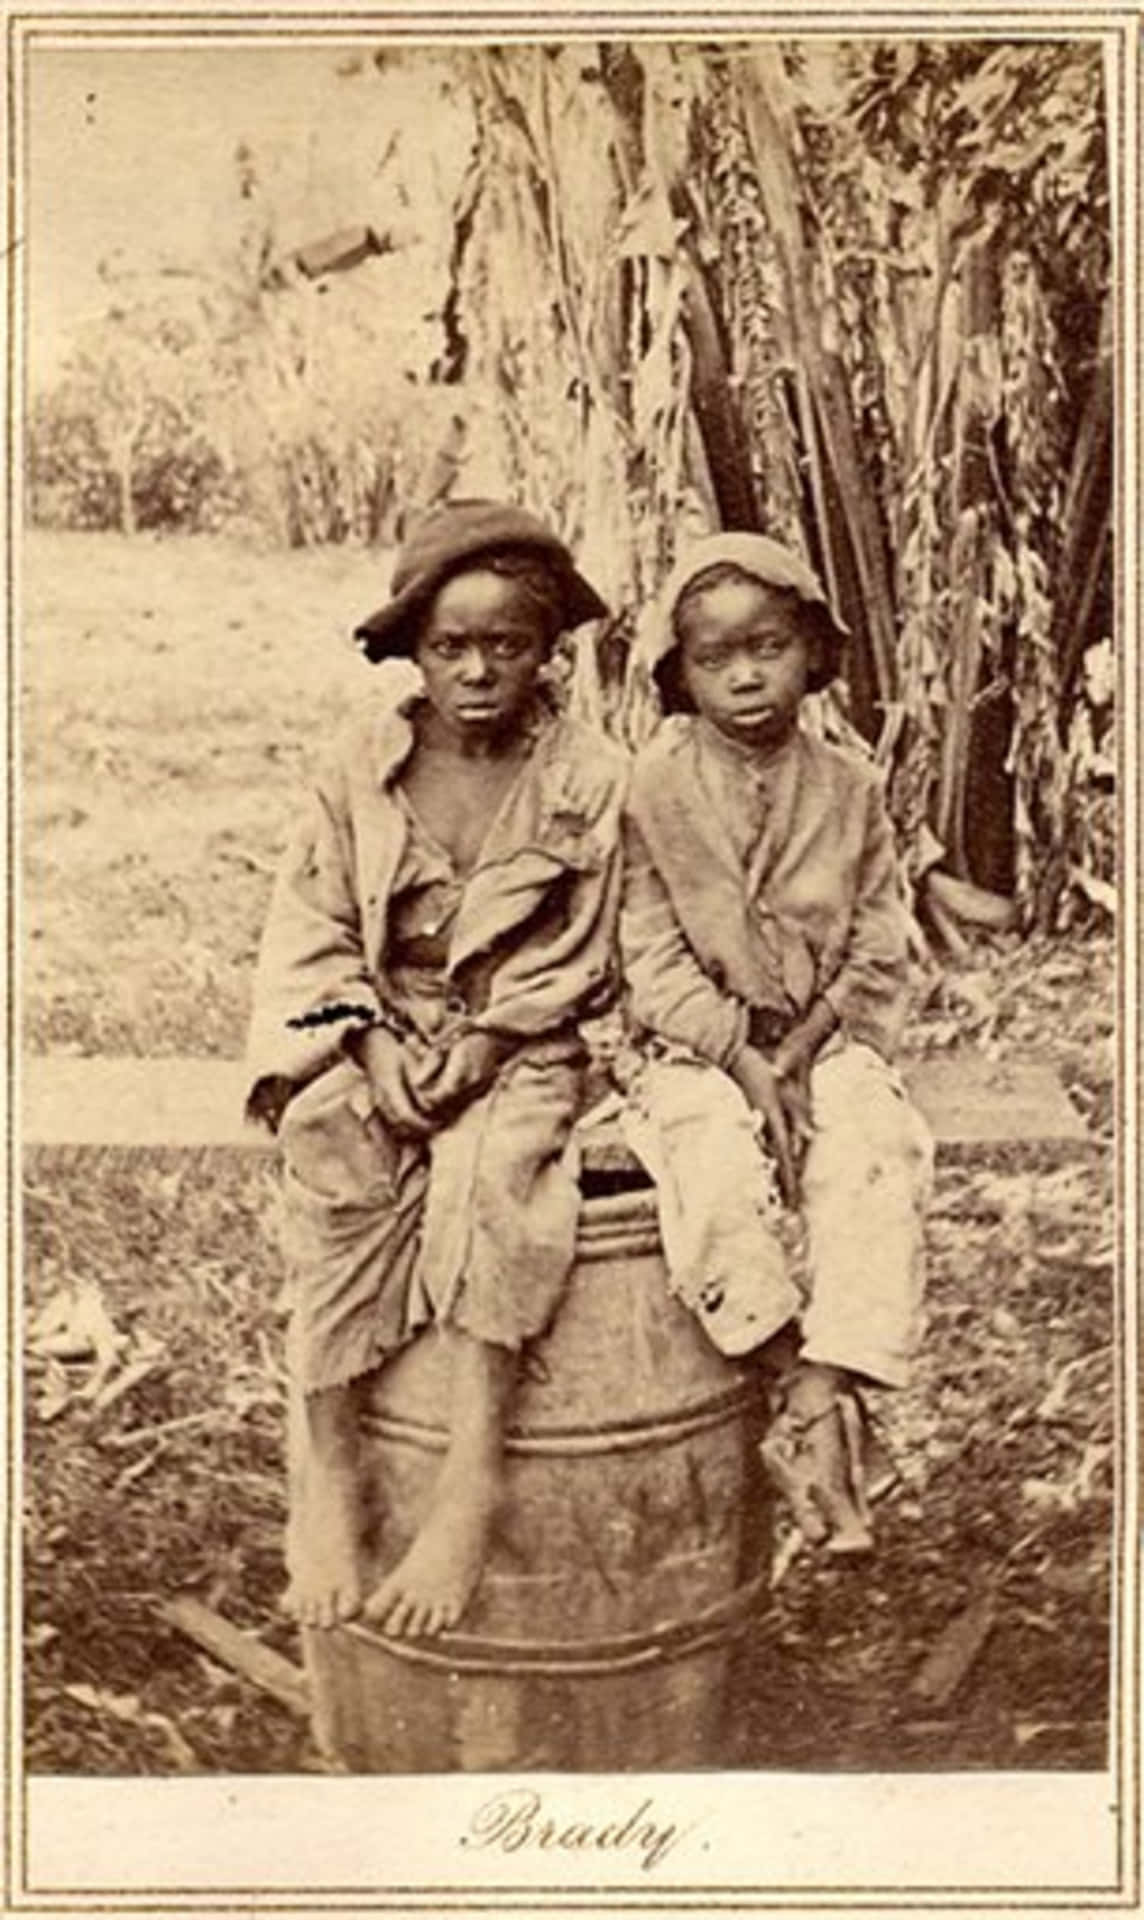 Two Boys Sitting On A Barrel